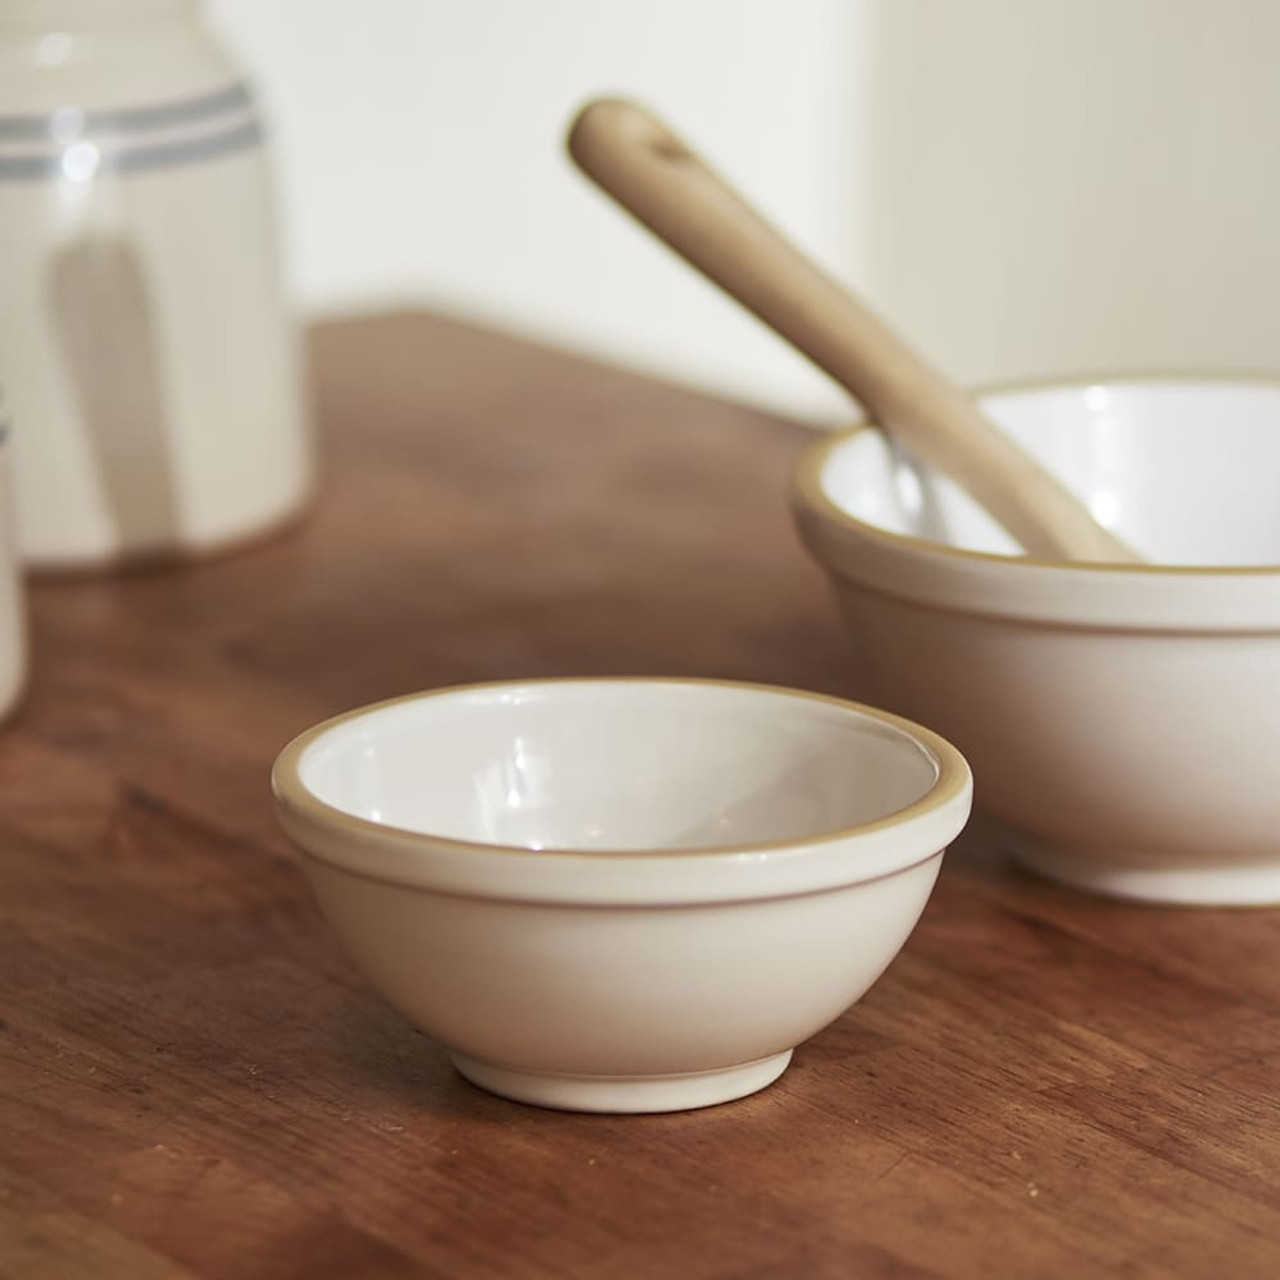 Pair of Ceramic Artisanal Kitchen Bowls